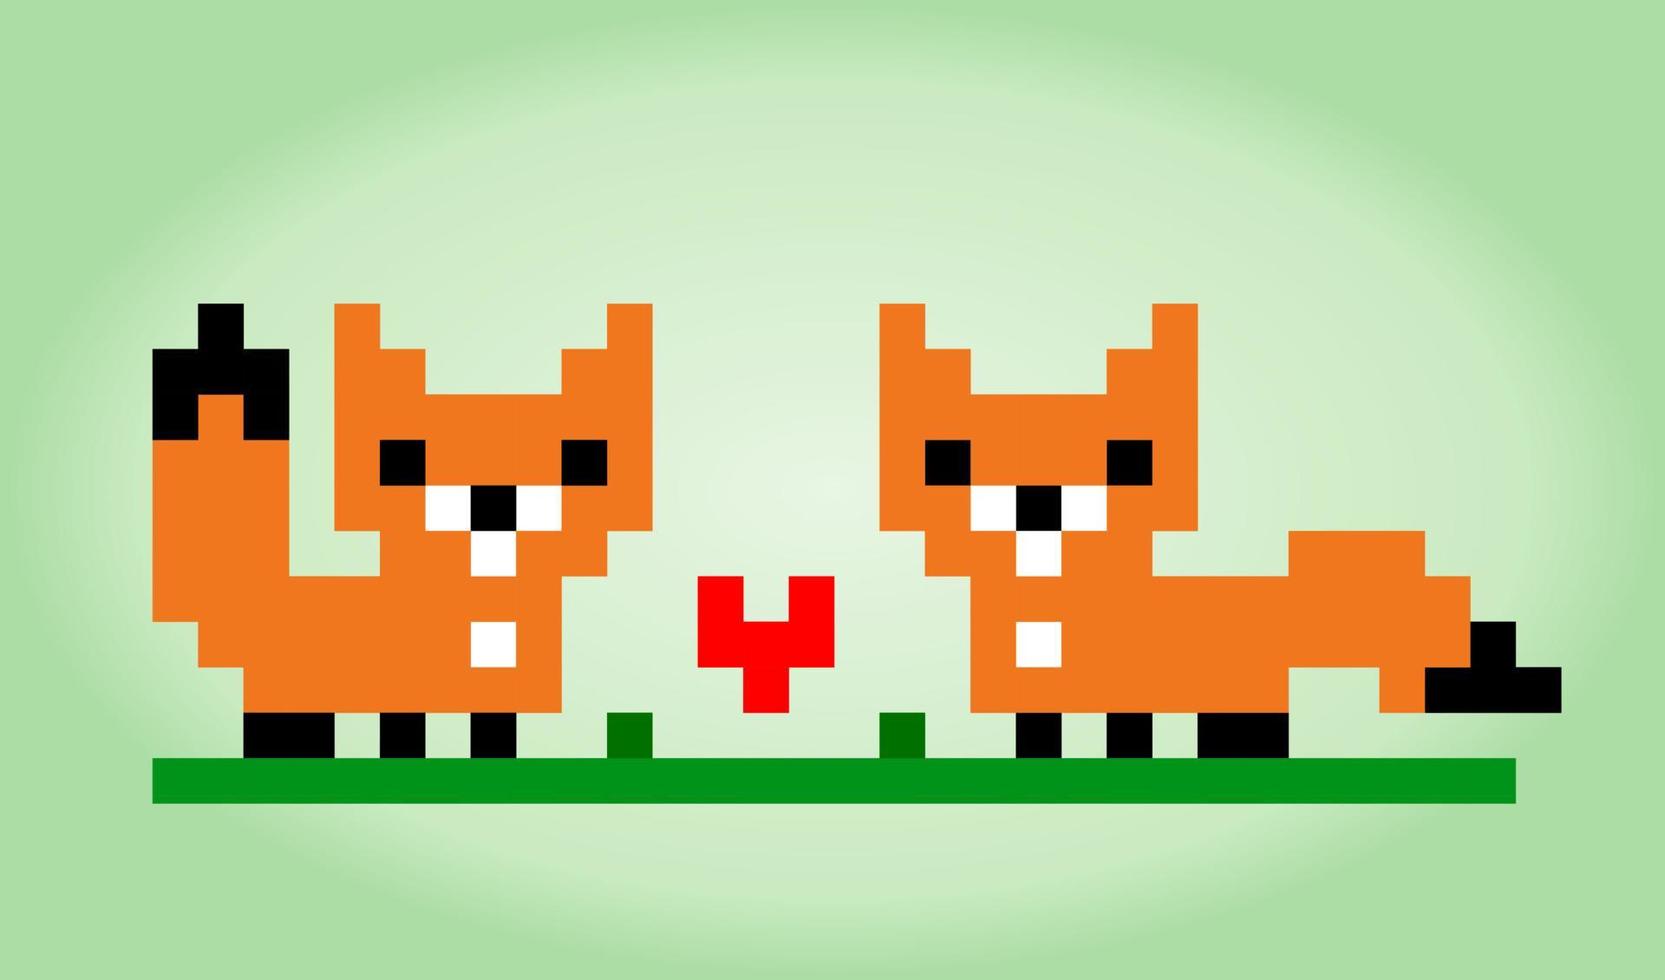 Píxel de zorro de 8 bits. animal en ilustración vectorial para punto de cruz y activos de juego. vector